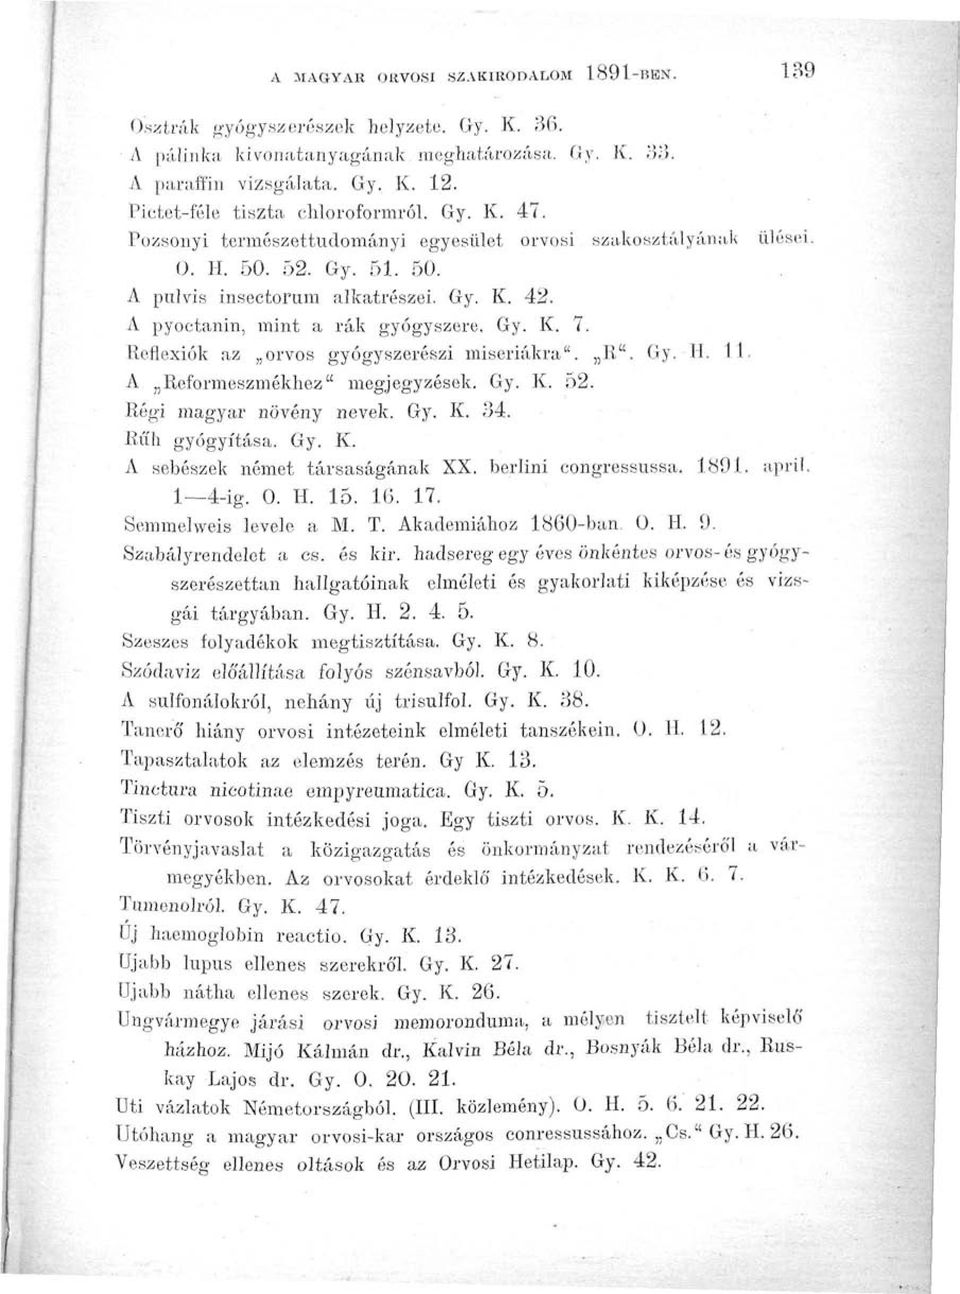 A pyoctanin, mint a rák gyógyszere. Gy. K. 7. Reflexiók az orvos gyógyszerészi misei-iákra". R". Gy. H. 11. A Reformeszmékhez" megjegyzések. Gy. K. 52. Régi magyar növény nevek. Gy. K. 34.